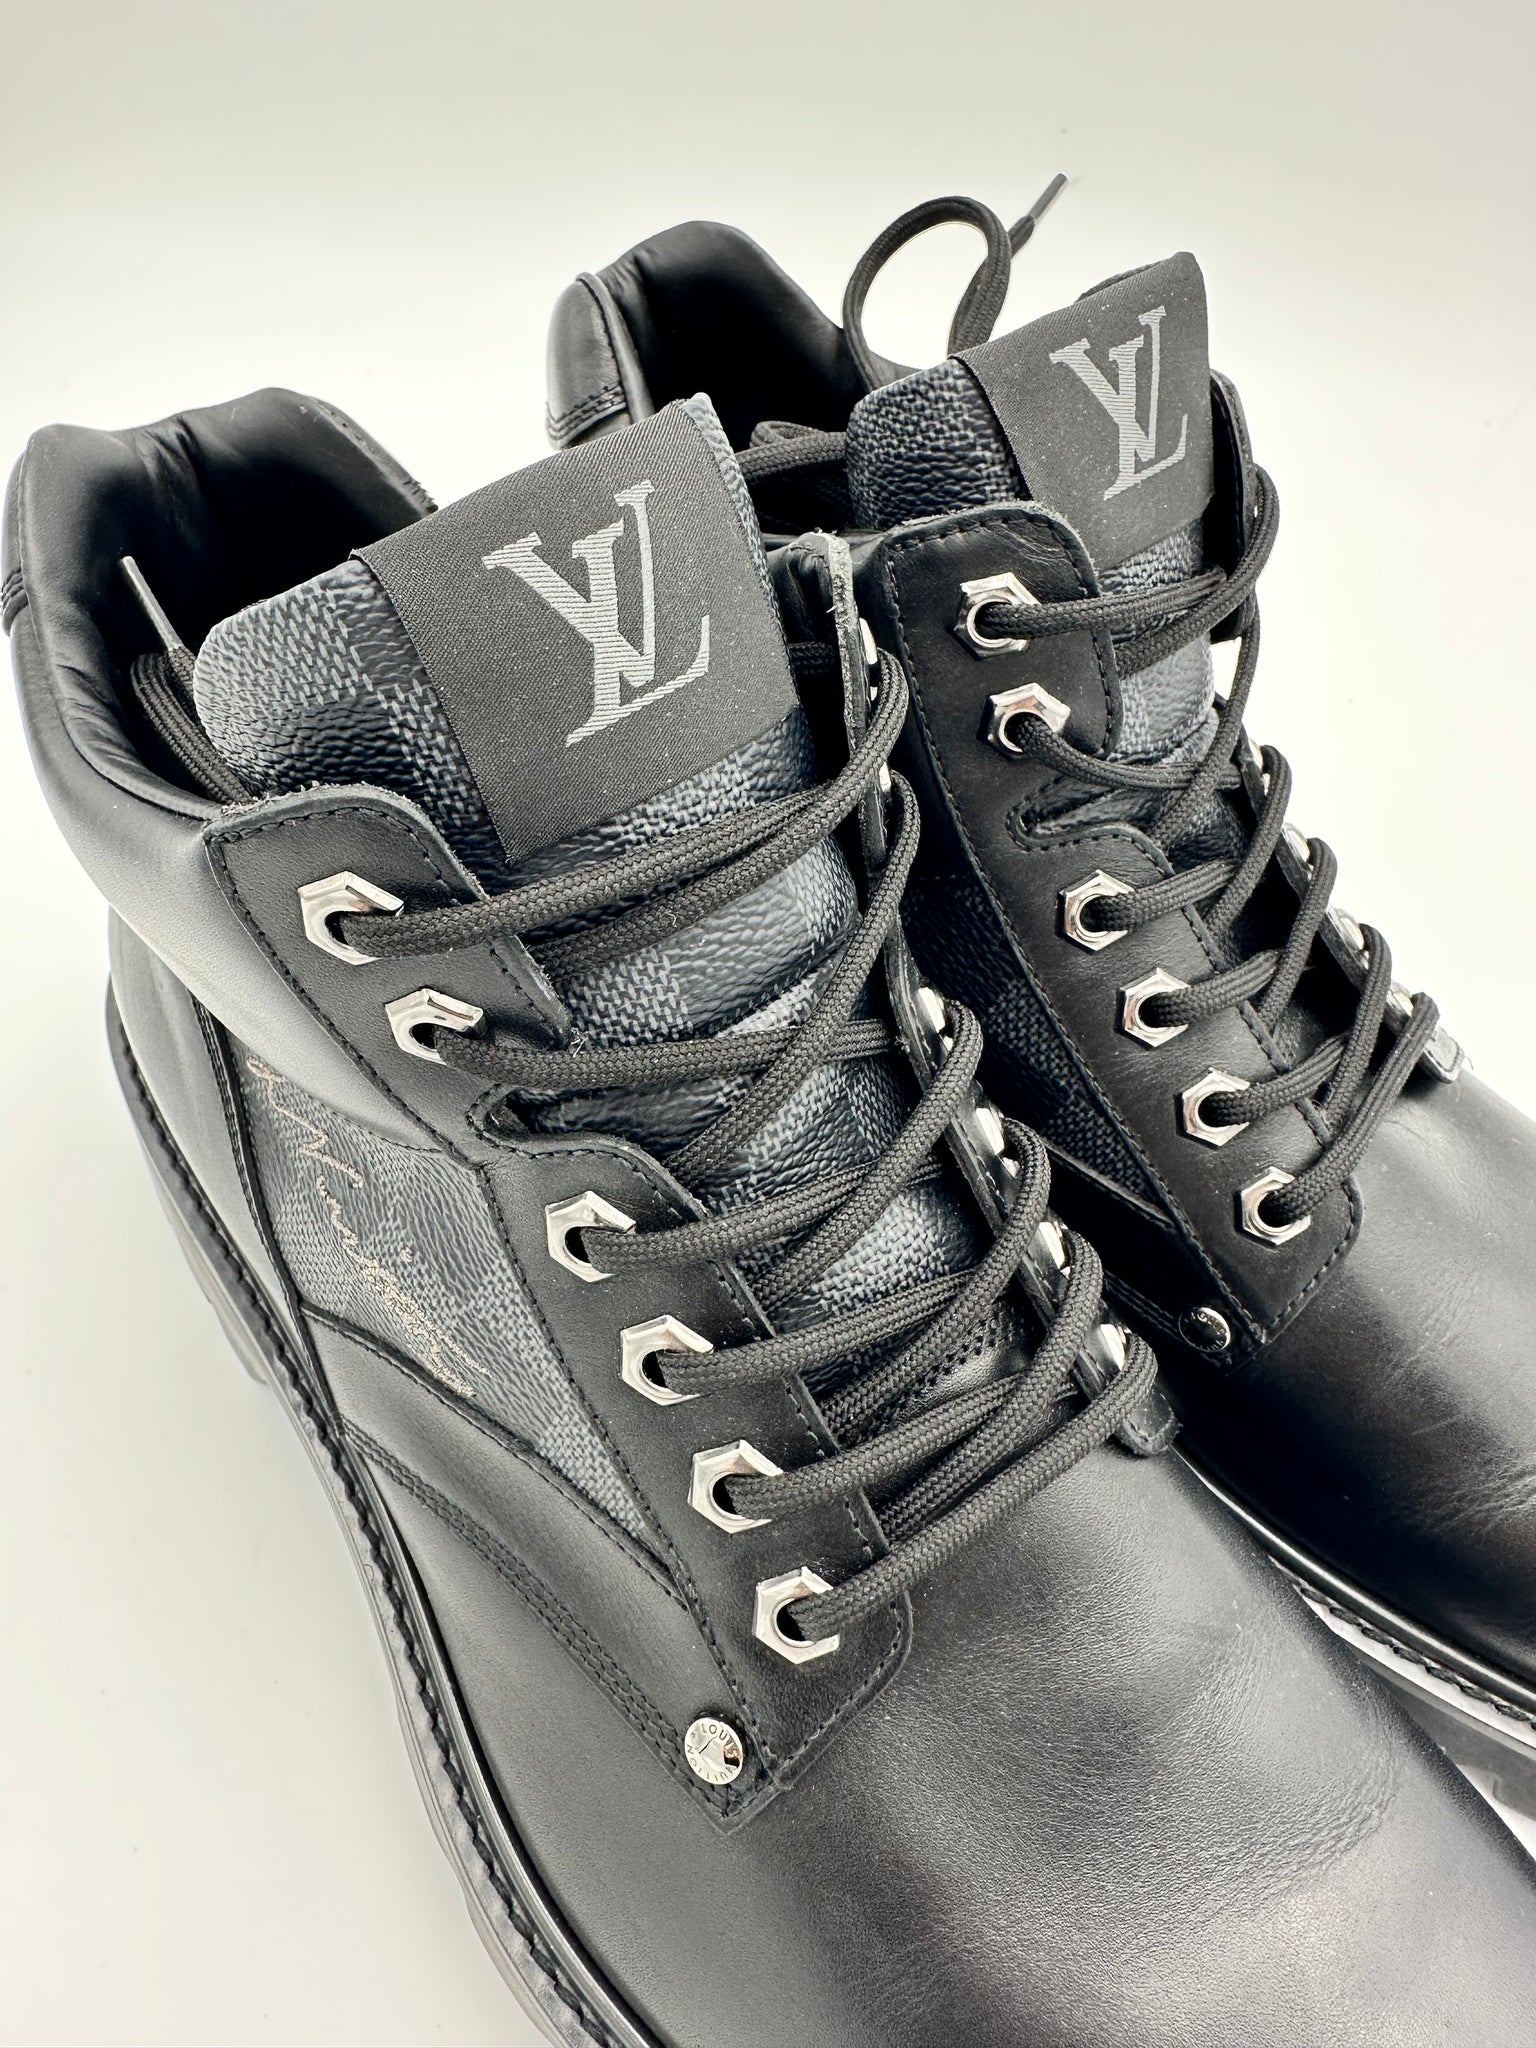 Louis Vuitton Monogram Mens Outdoor Boots, Beige, 09.0